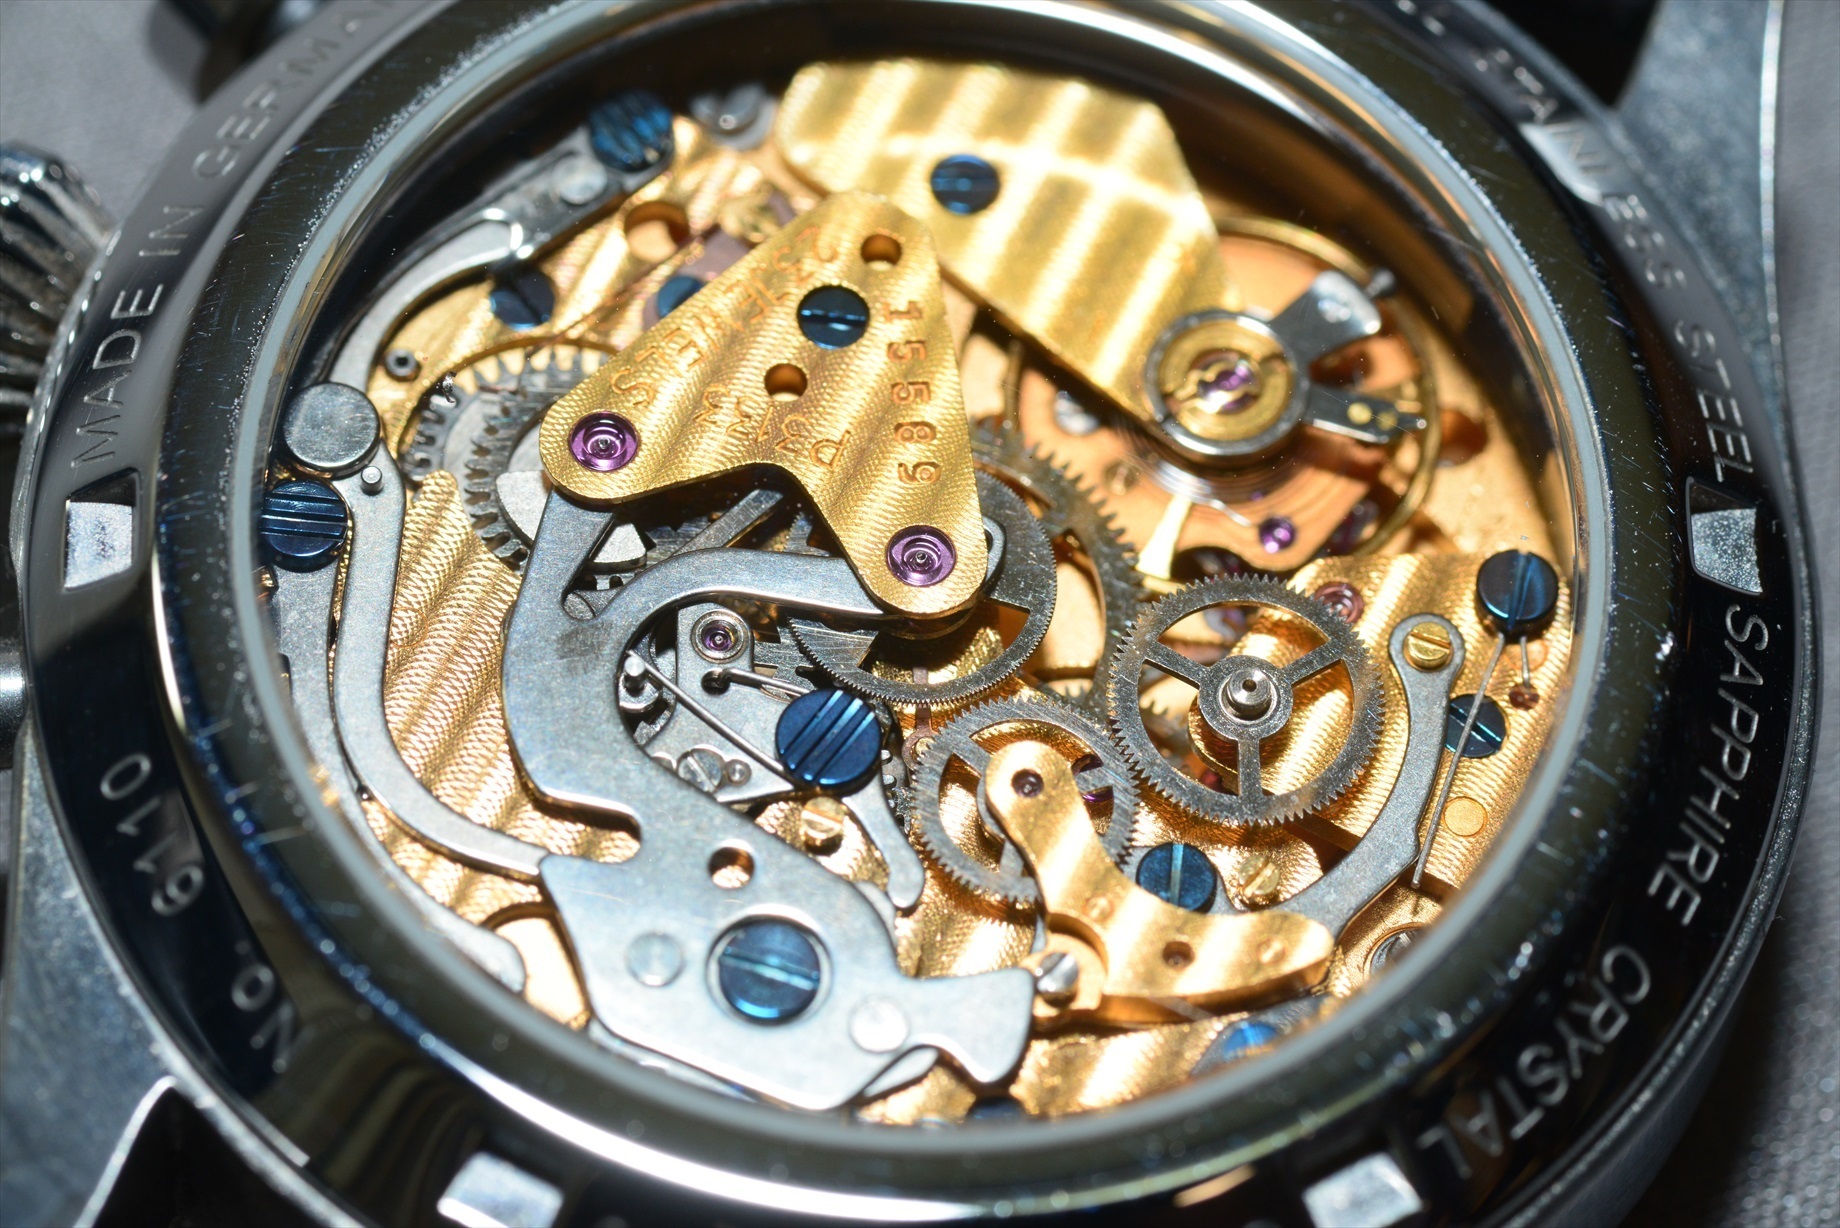 ユンカース スピッツベルゲン F.13 - 腕時計(アナログ)